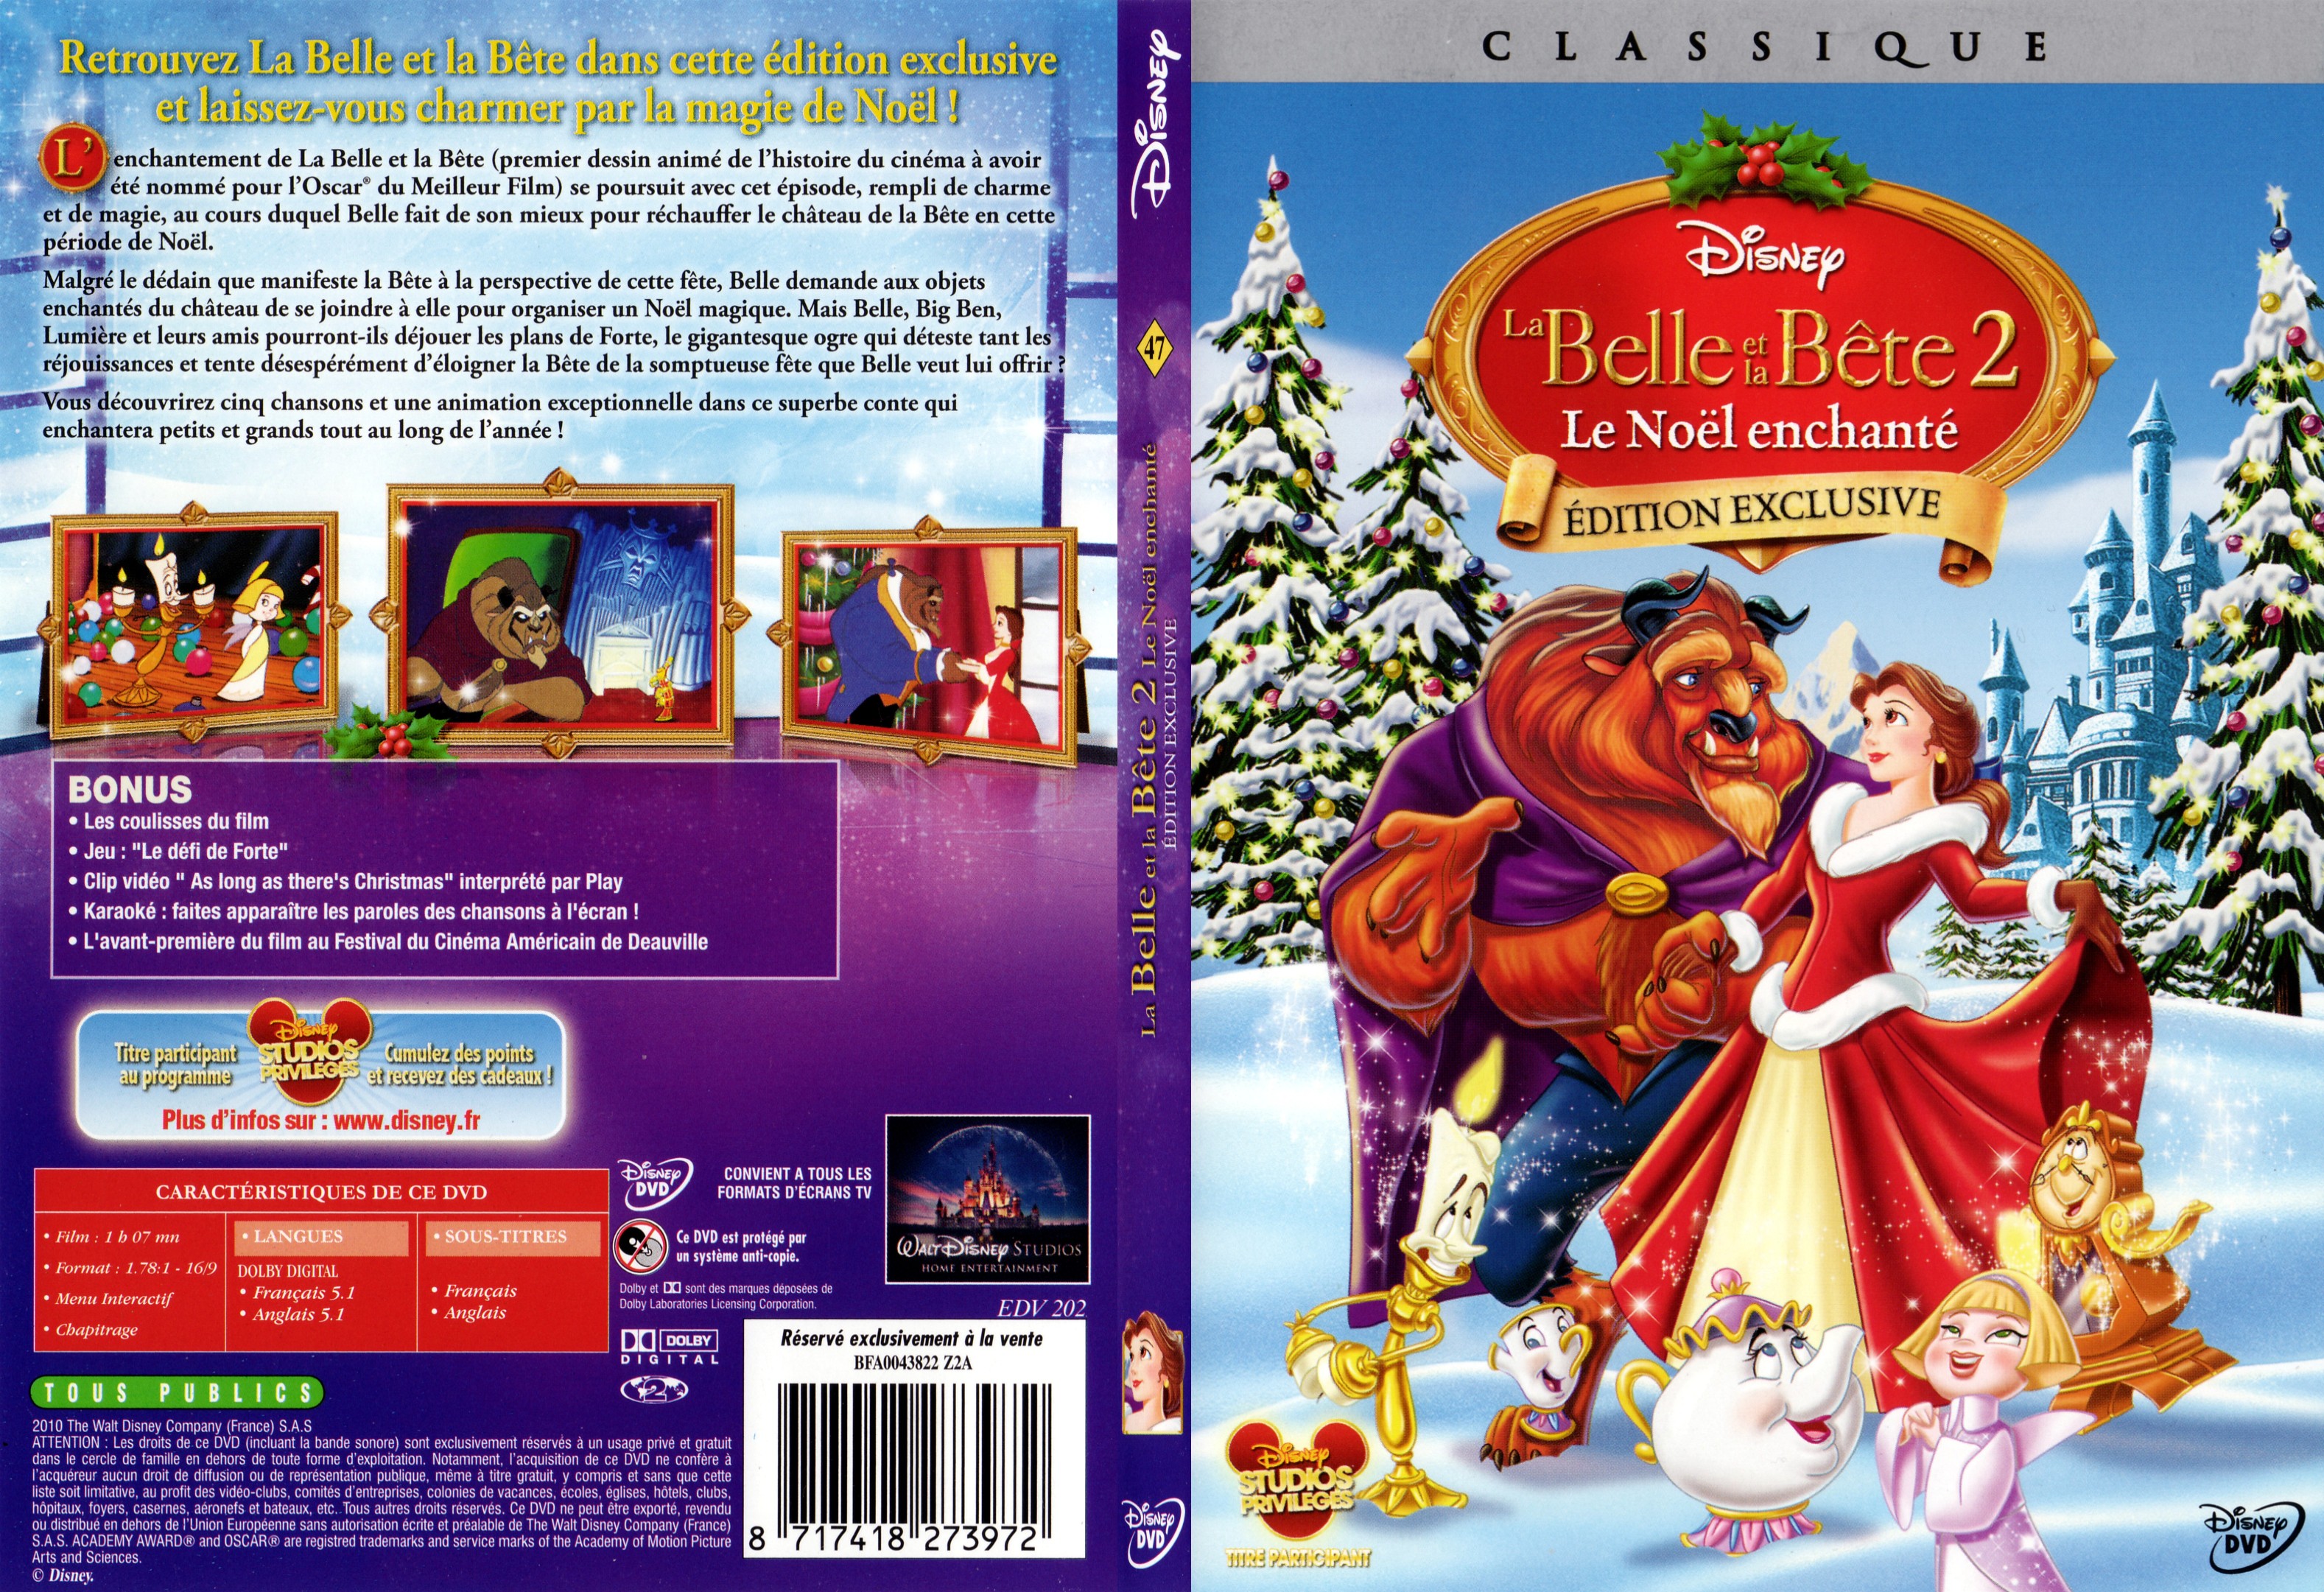 Jaquette DVD La belle et la bete 2 - SLIM v2